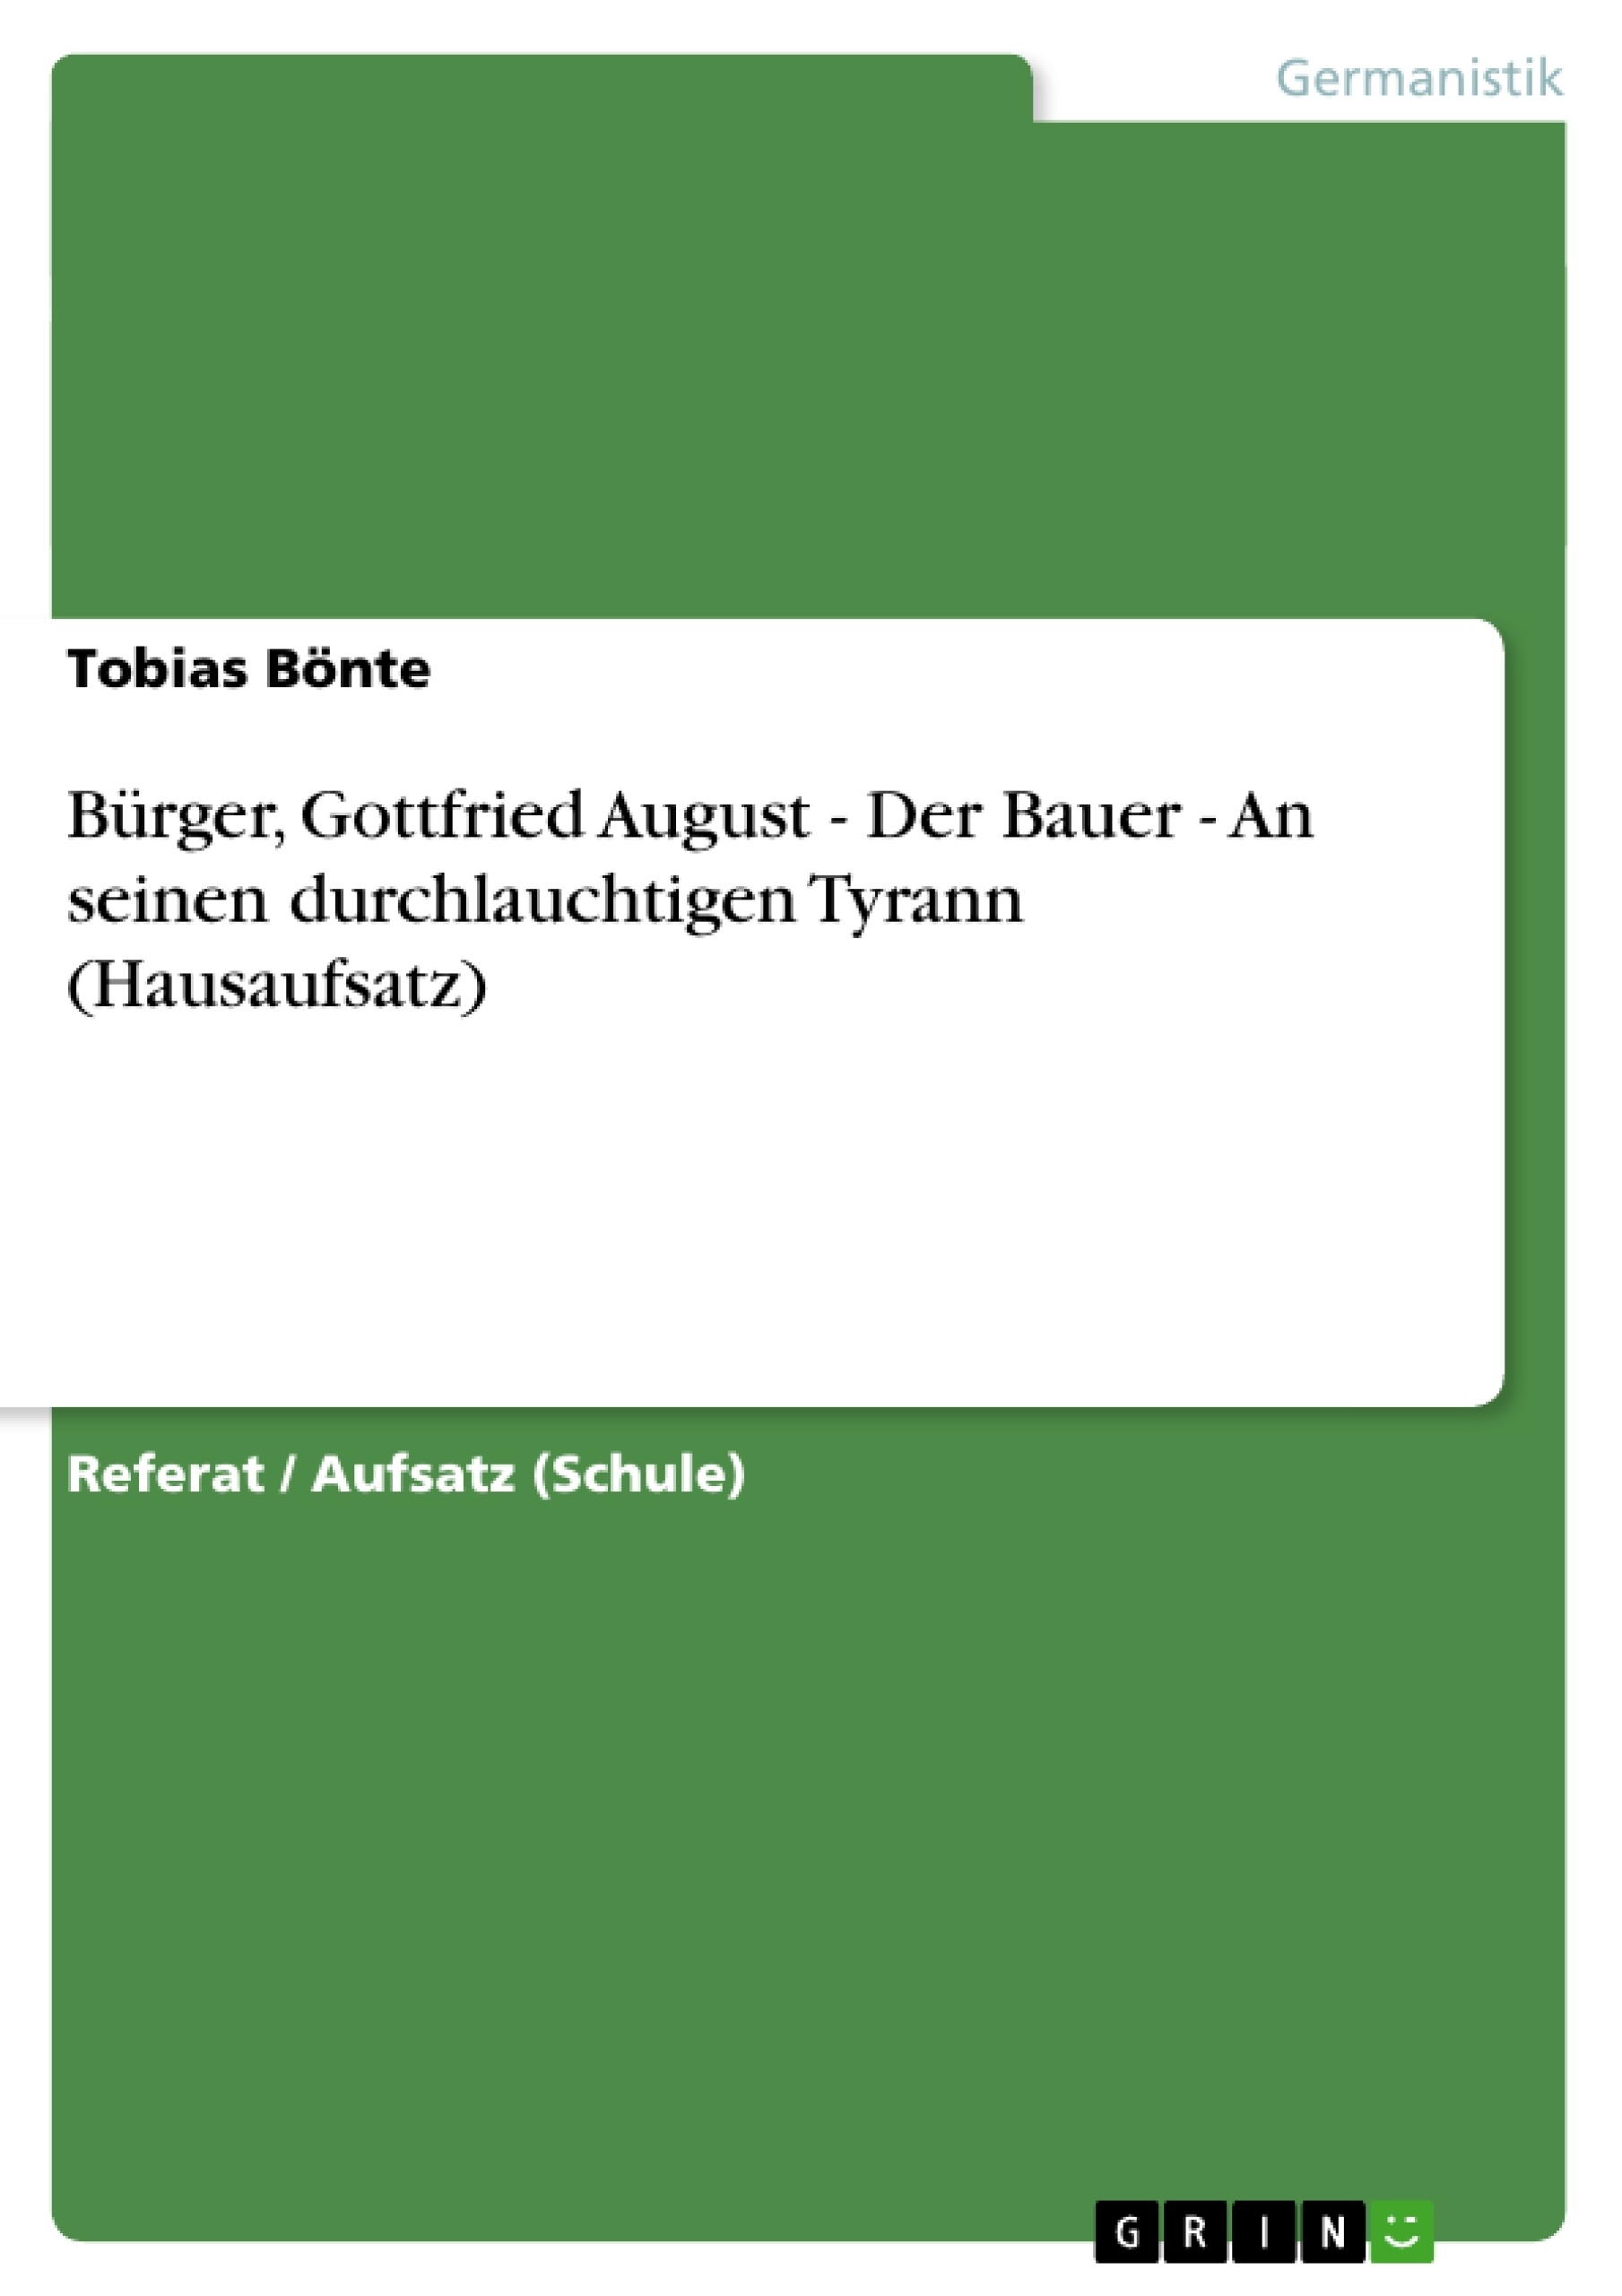 Título: Bürger, Gottfried August - Der Bauer - An seinen durchlauchtigen Tyrann (Hausaufsatz)